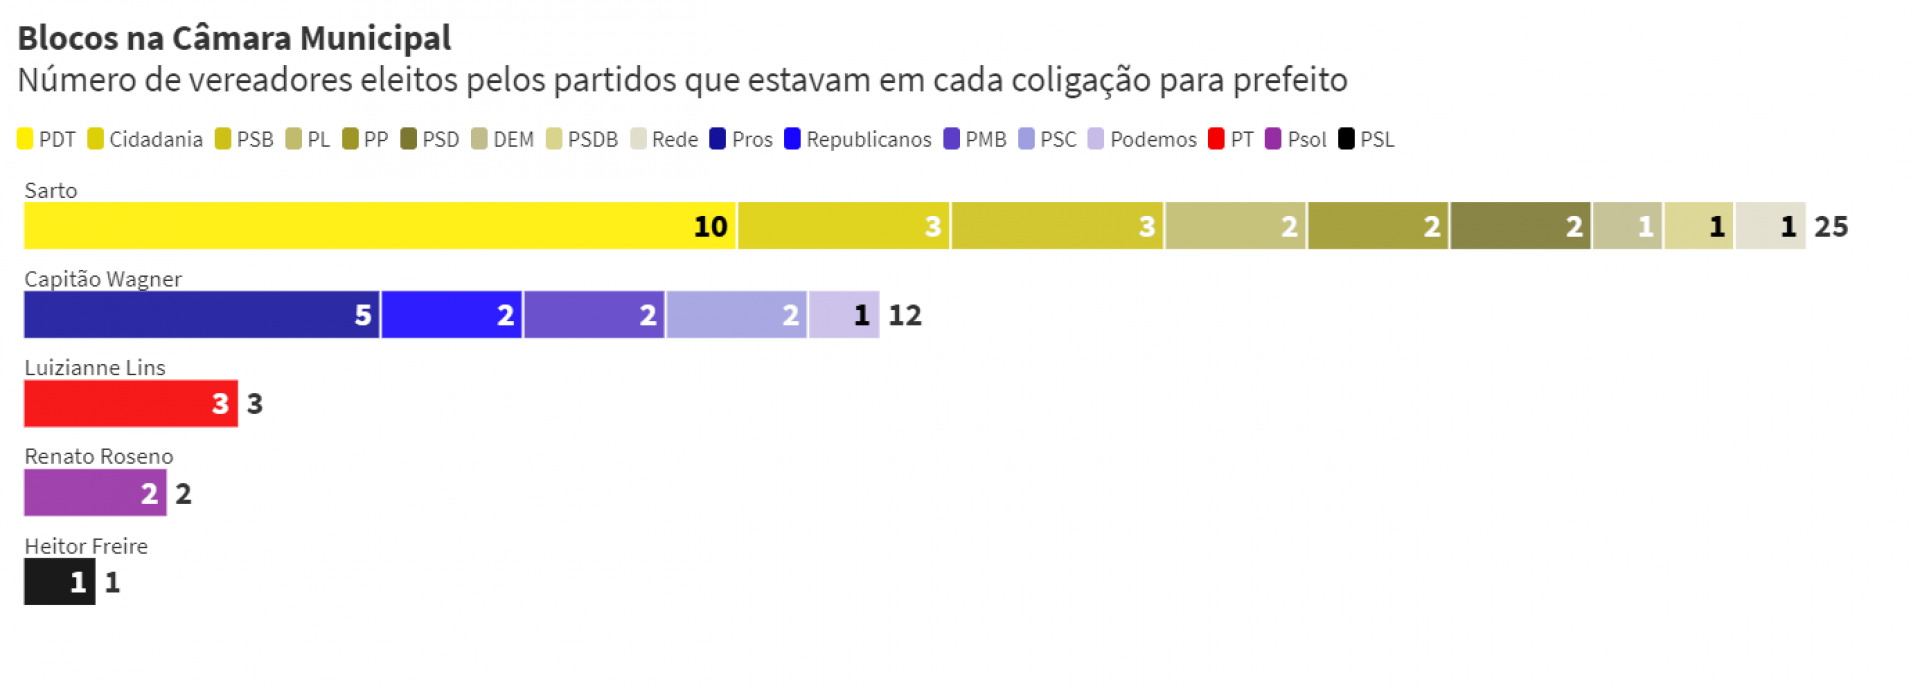 Distribuição de blocos na Câmara Municipal de acordo com as candidaturas que apoiaram a prefeito (Foto: O POVO)